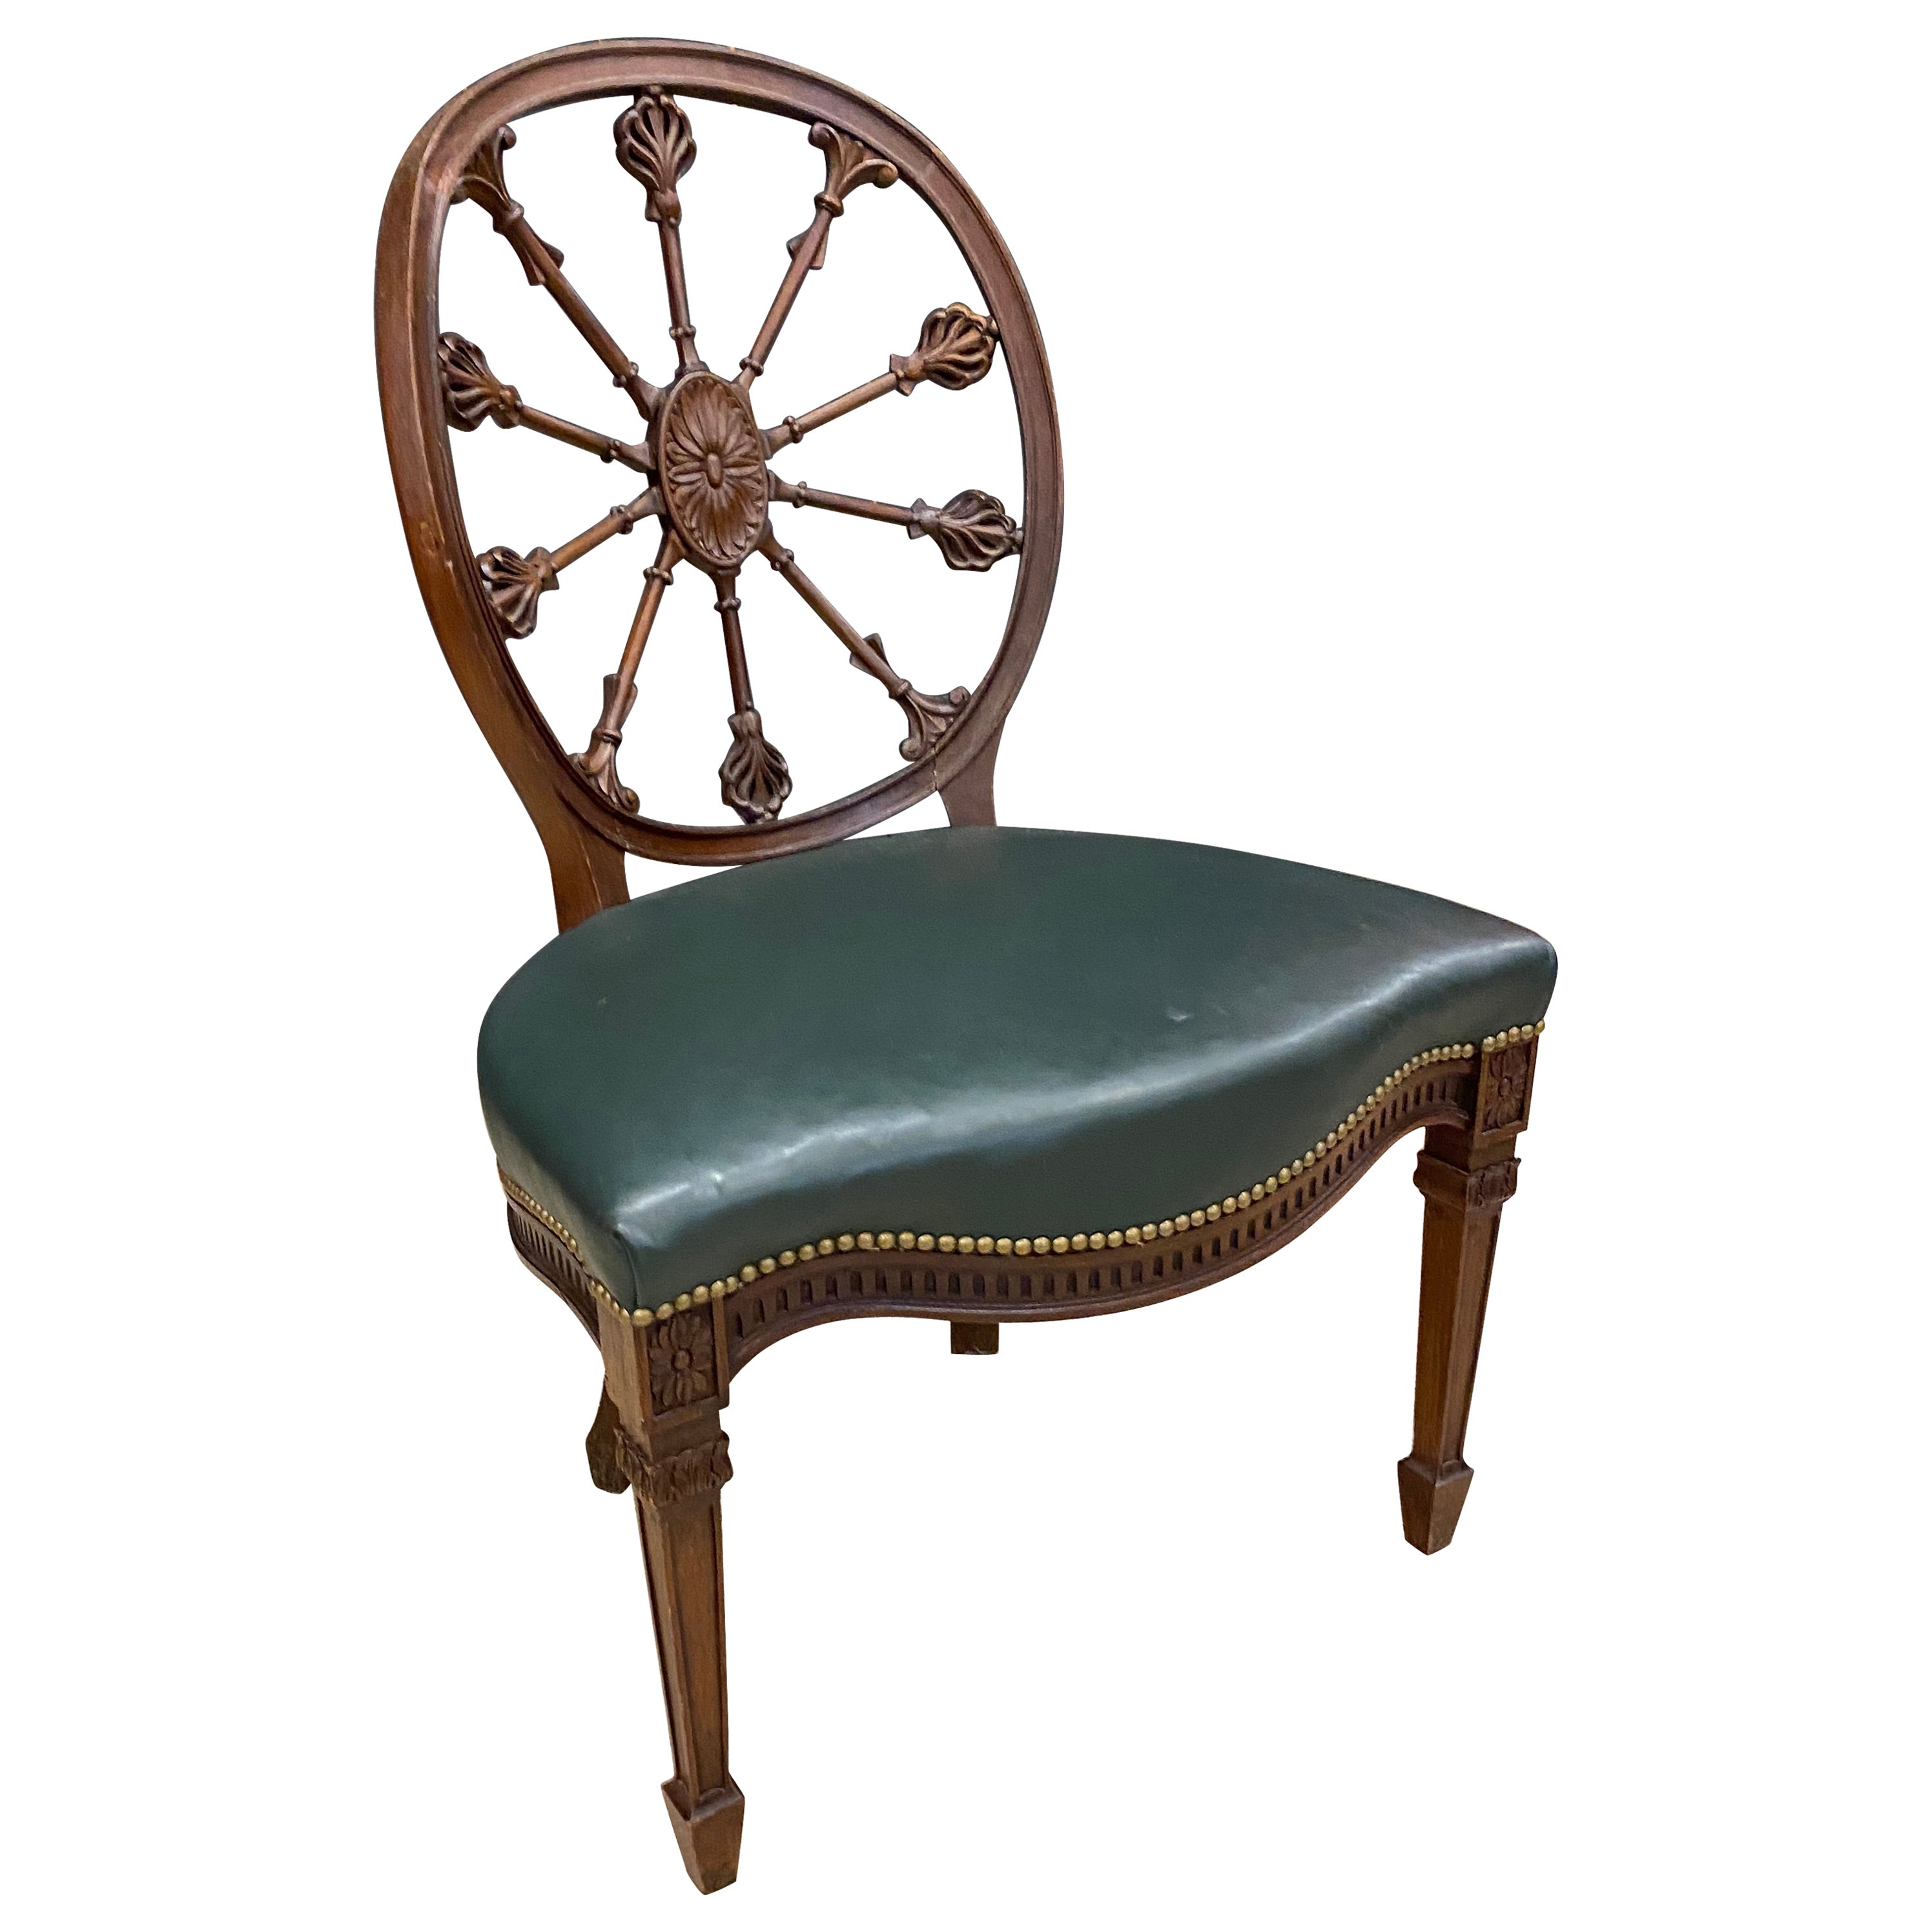 Originaler Bergère-Sessel im viktorianischen Stil, vollständig restauriert